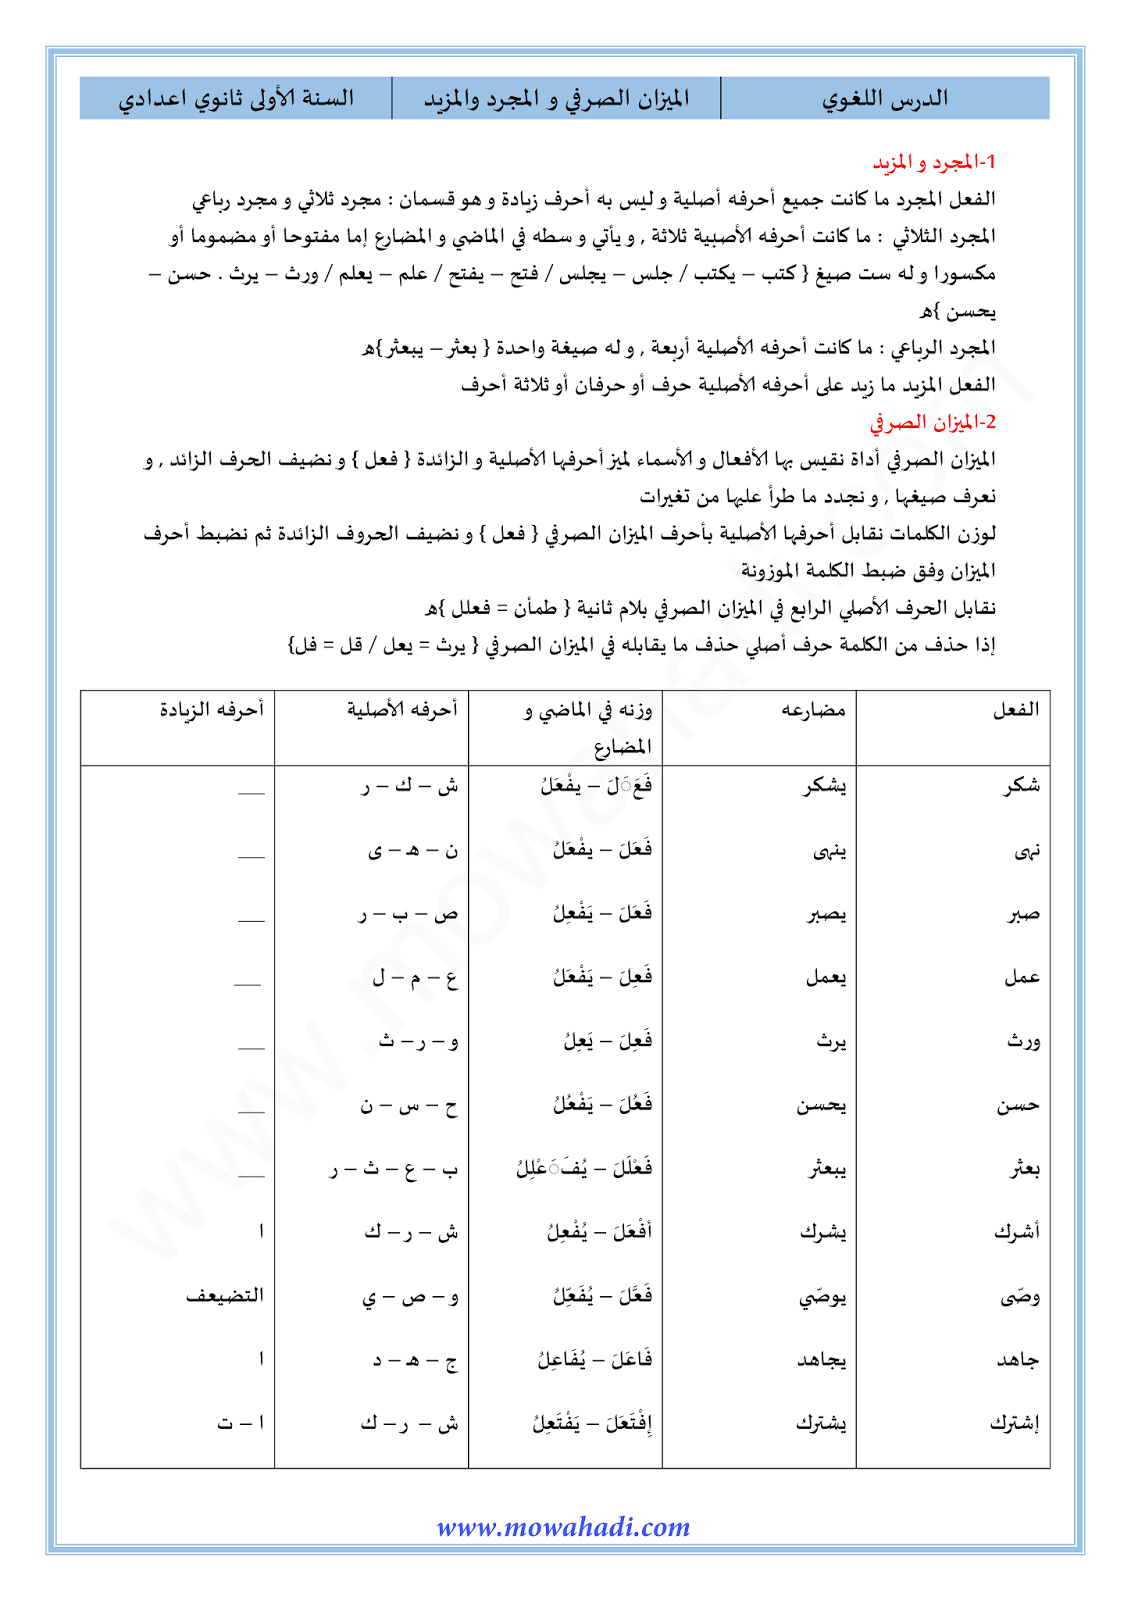 الدرس اللغوي الميزان الصرفي و المجرد و المزيد للسنة الأولى اعدادي في مادة اللغة العربية 1-cours-dars-loghawi1_001